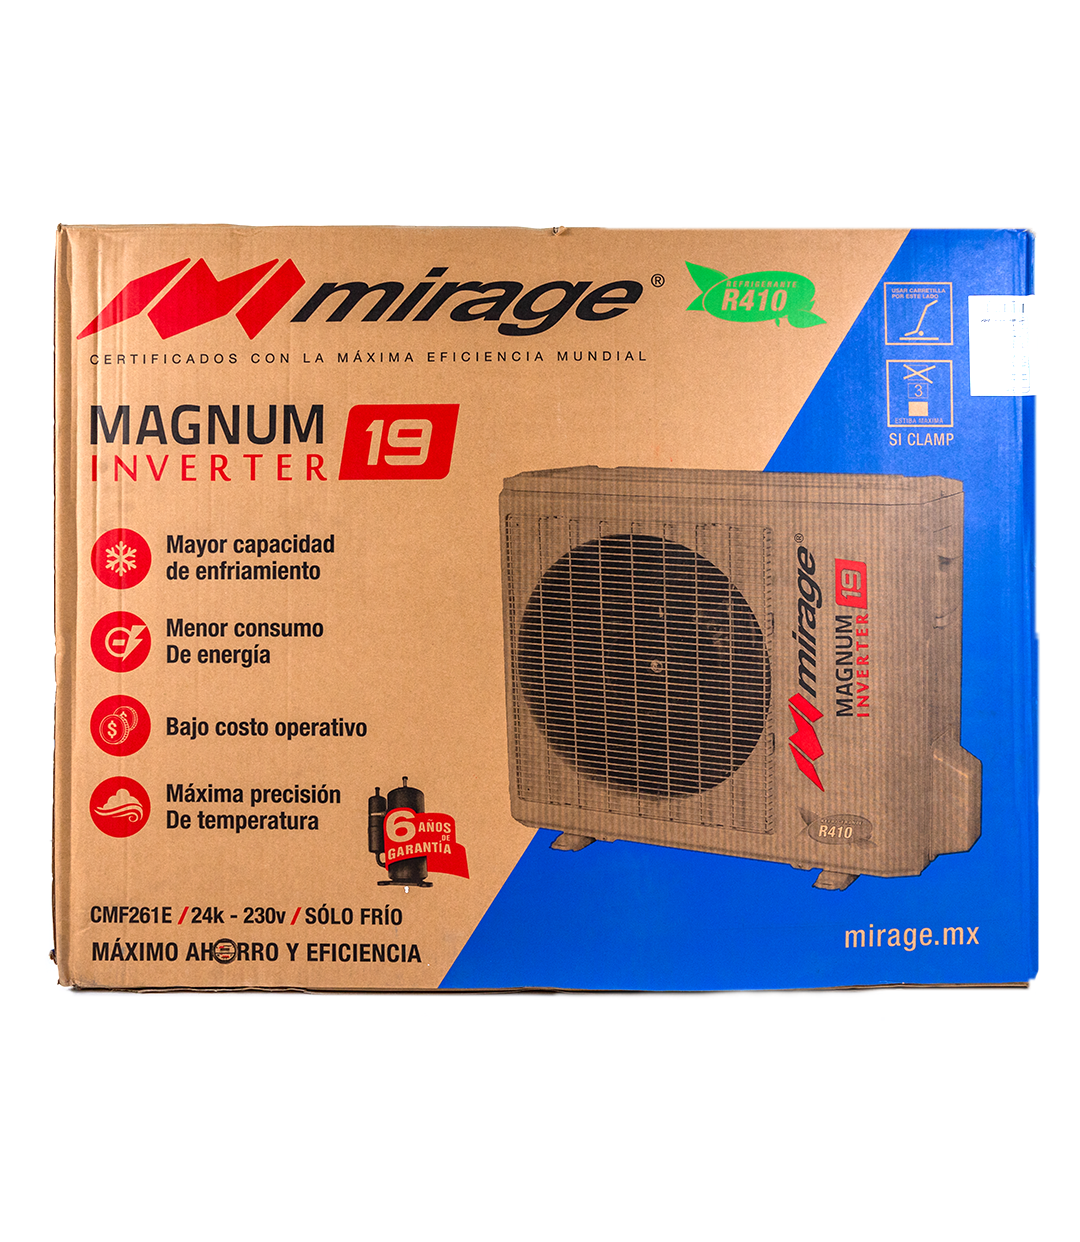 Magnum 19 Inverter CMF261E 2 Toneladas